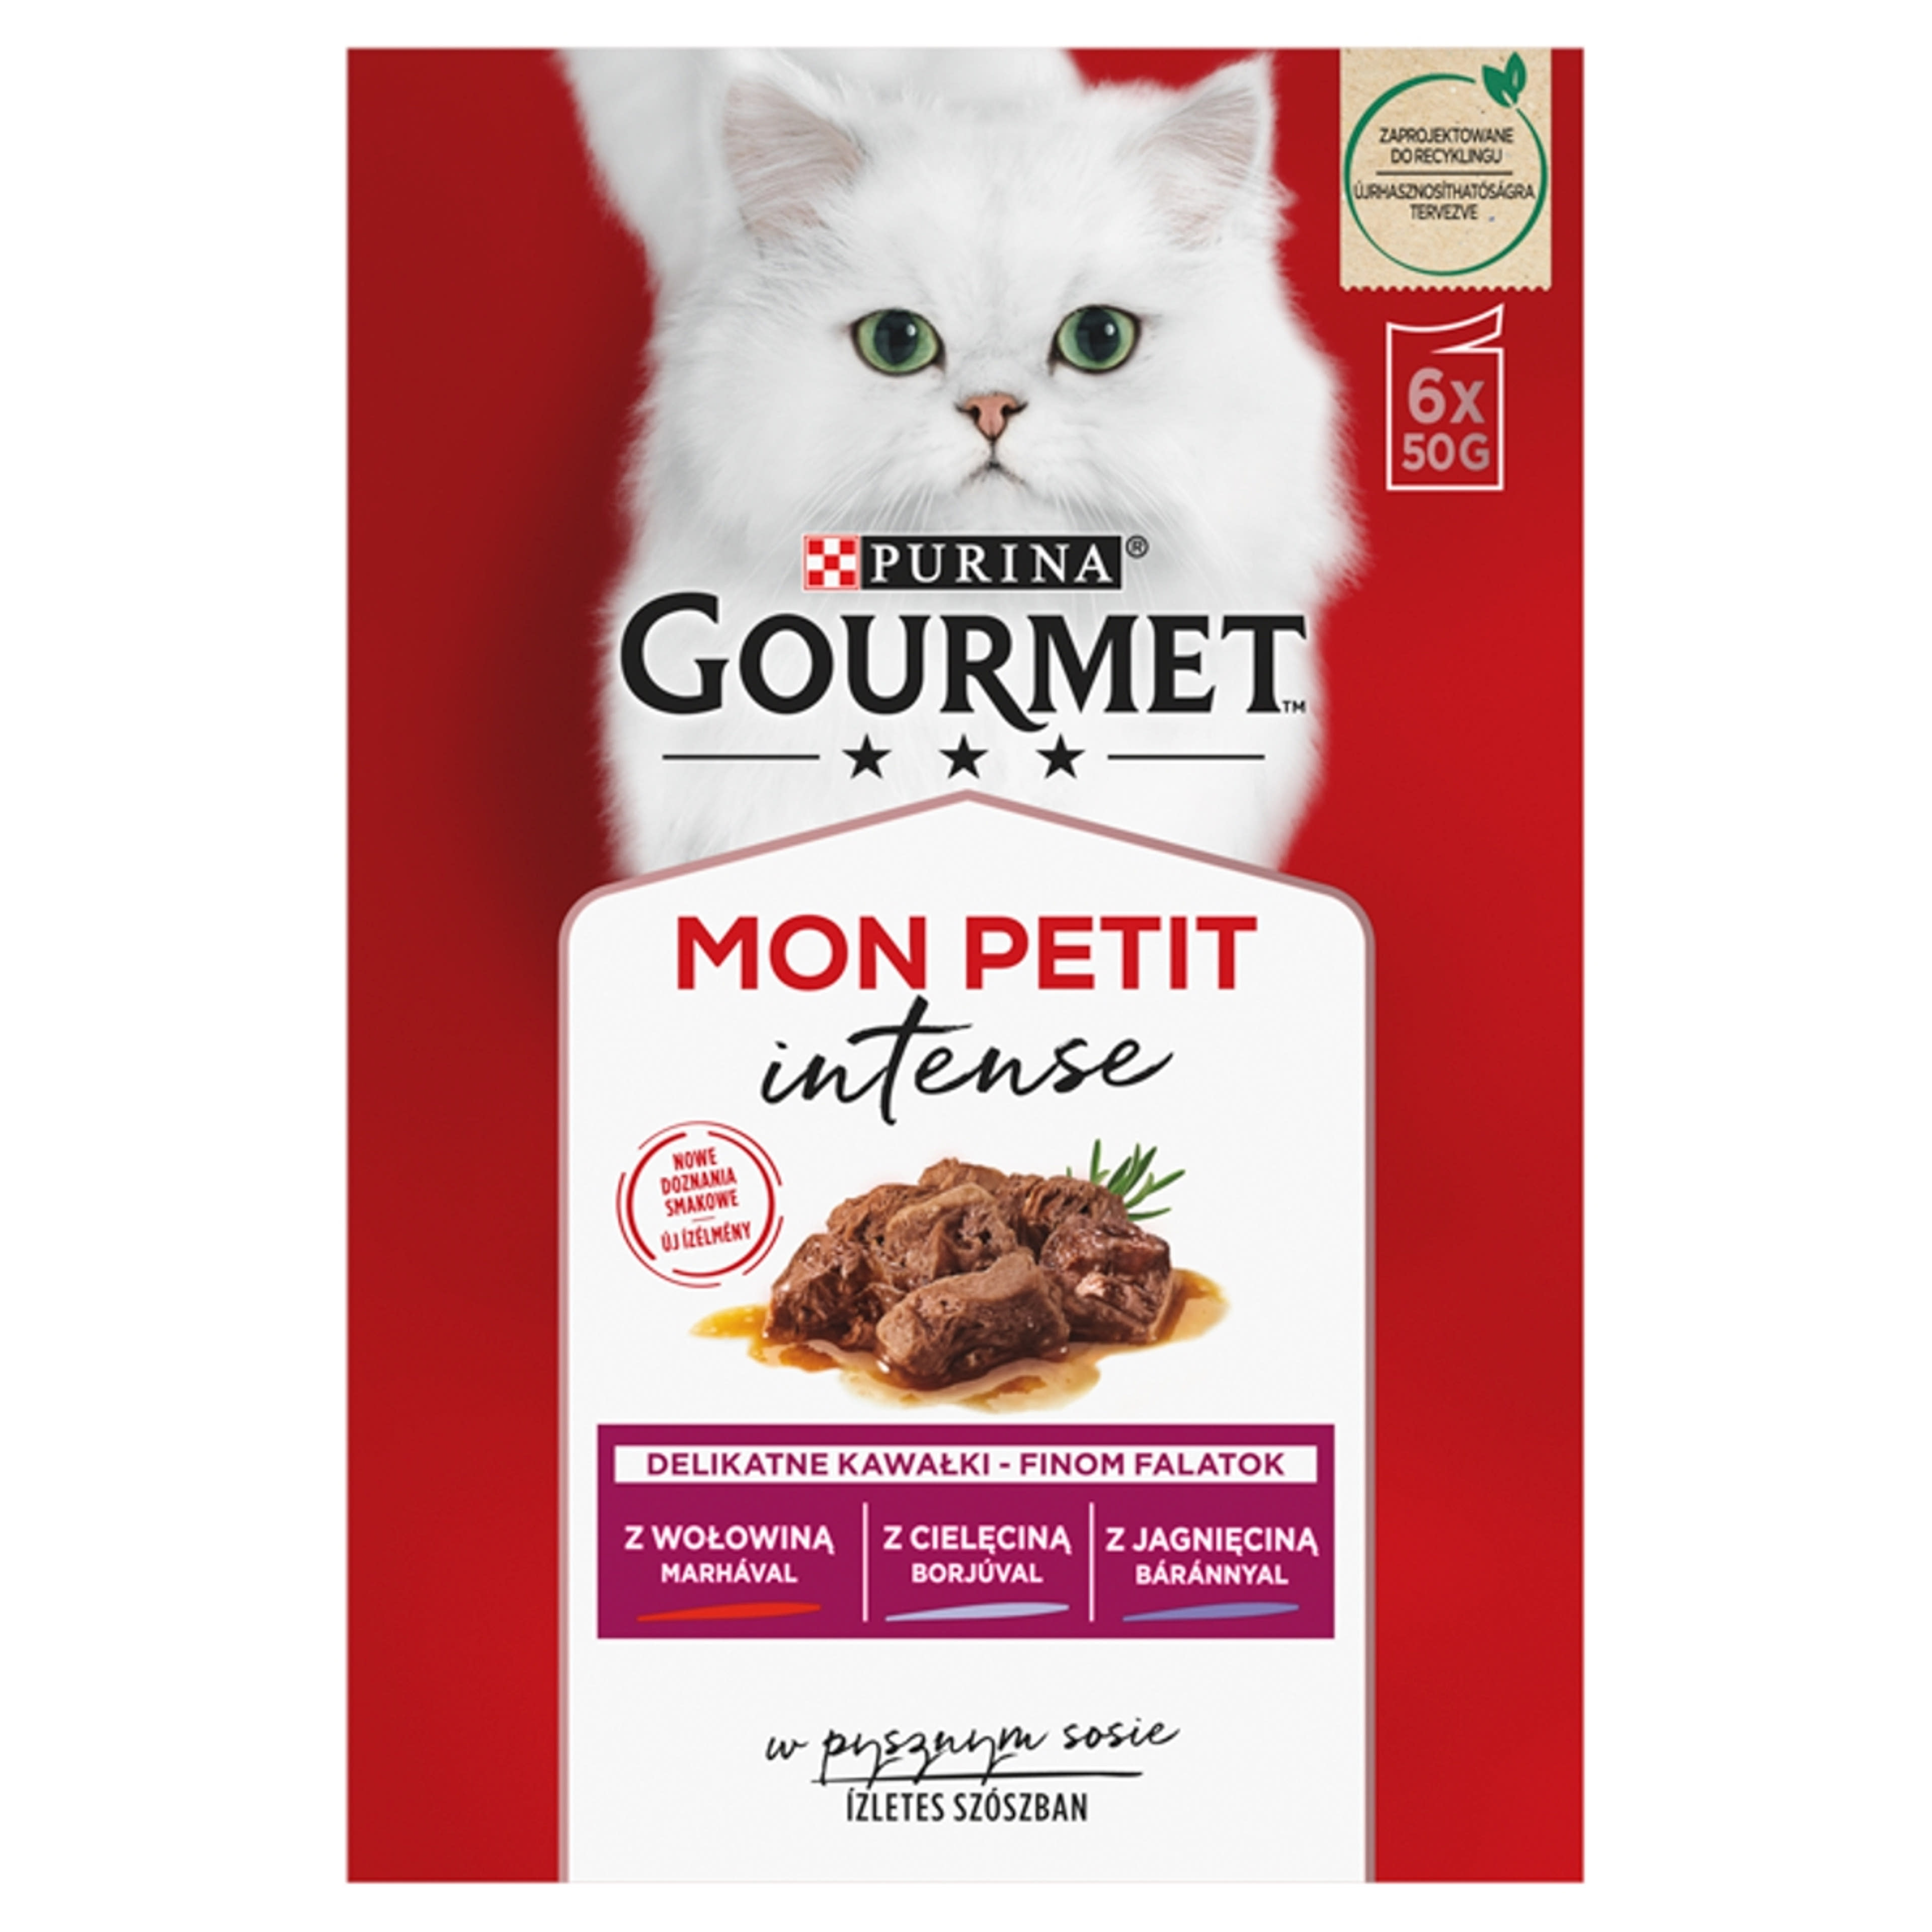 Gourmet Mon Petit alutasak macskáknak, marha,borjú,bárány (6x50 g) - 300 g